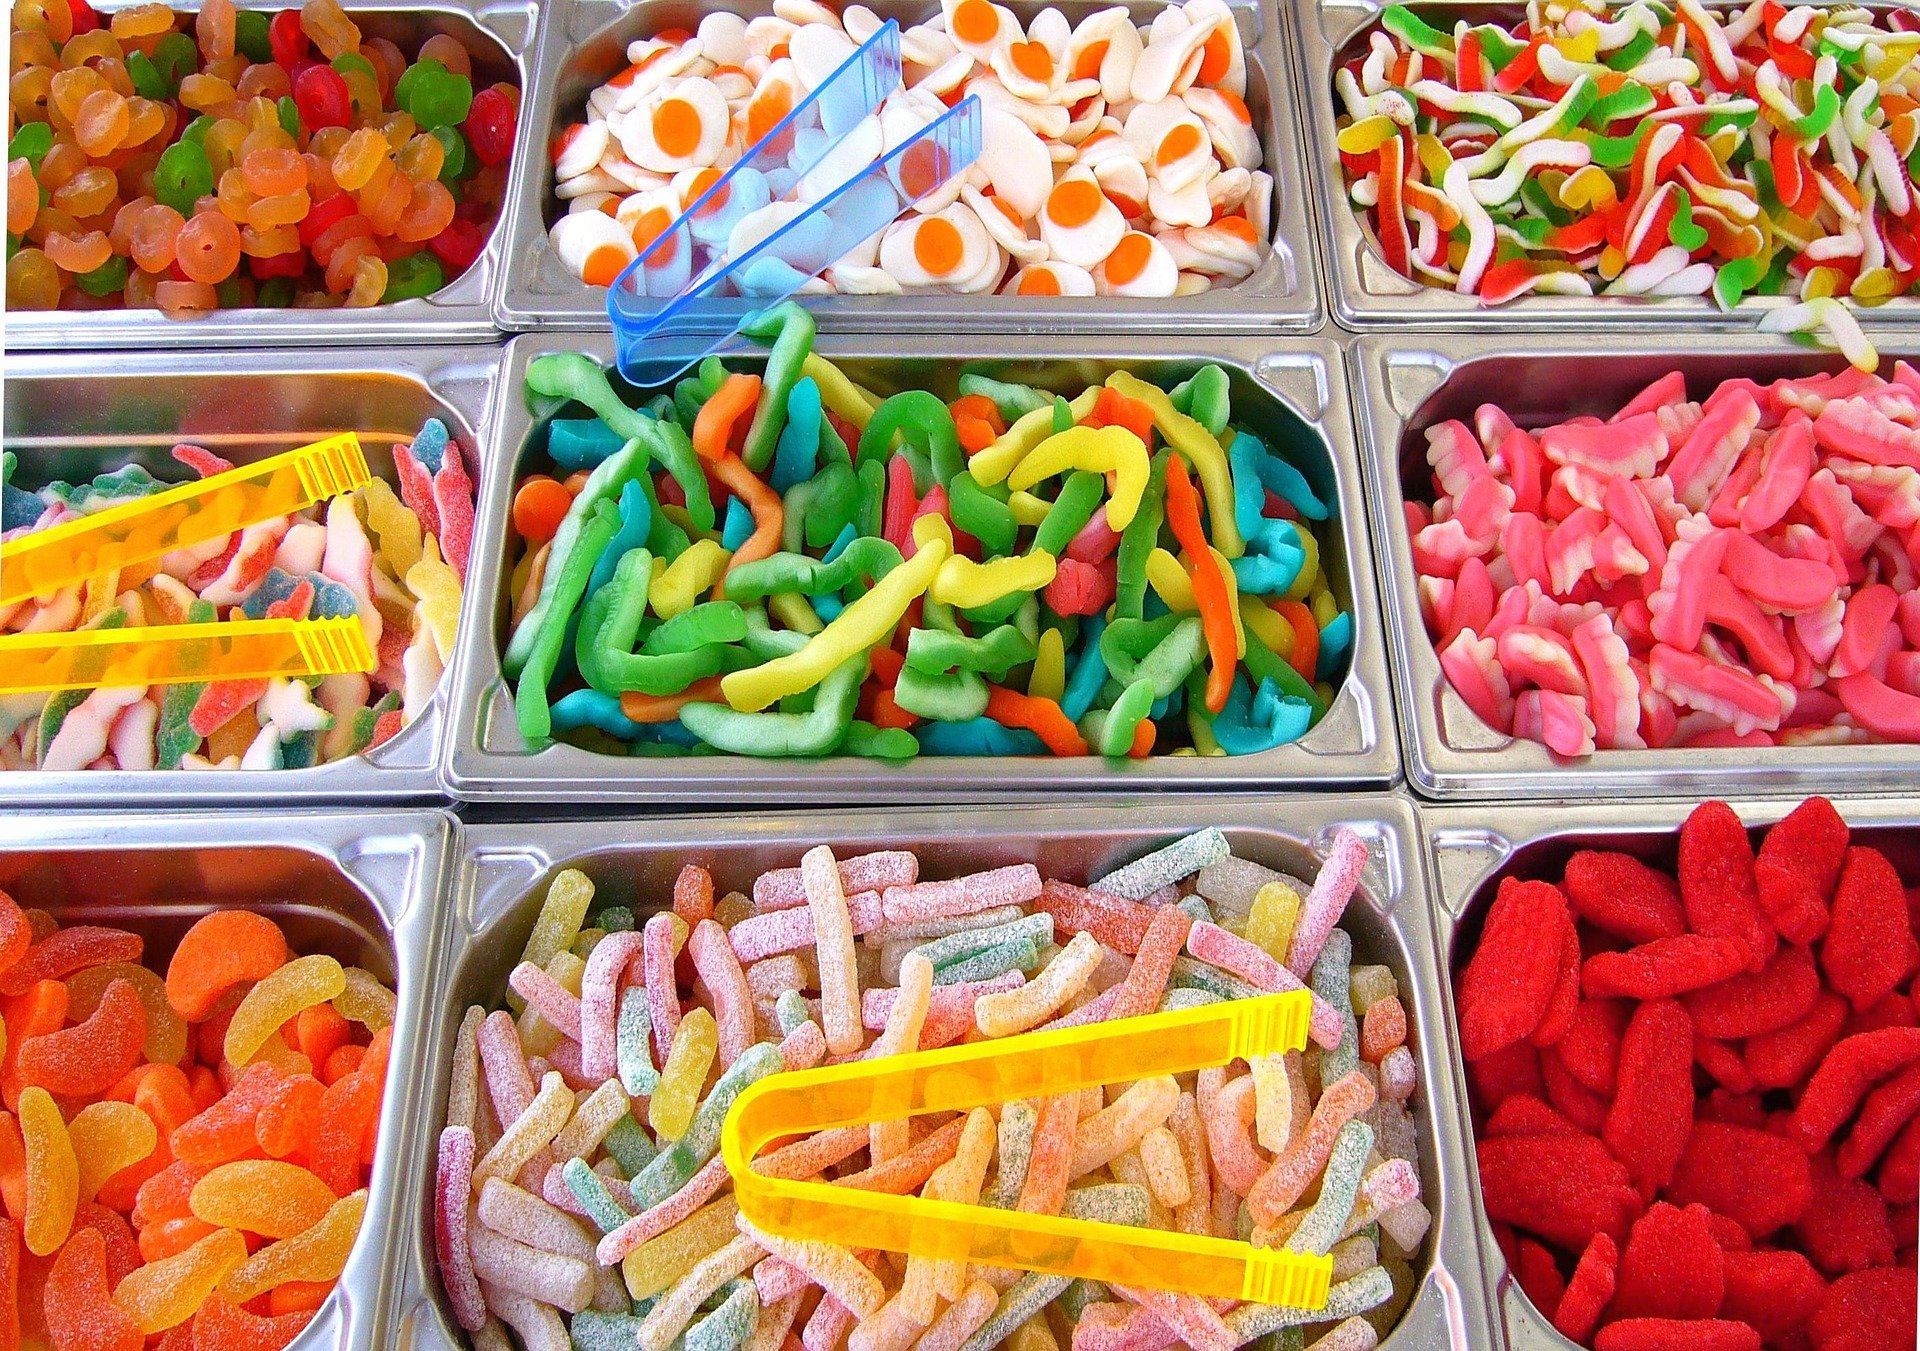 دراسة: الحلويات تضعف الذاكرة وتجبر الناس على تناول غذاء أكثر من الحاجة